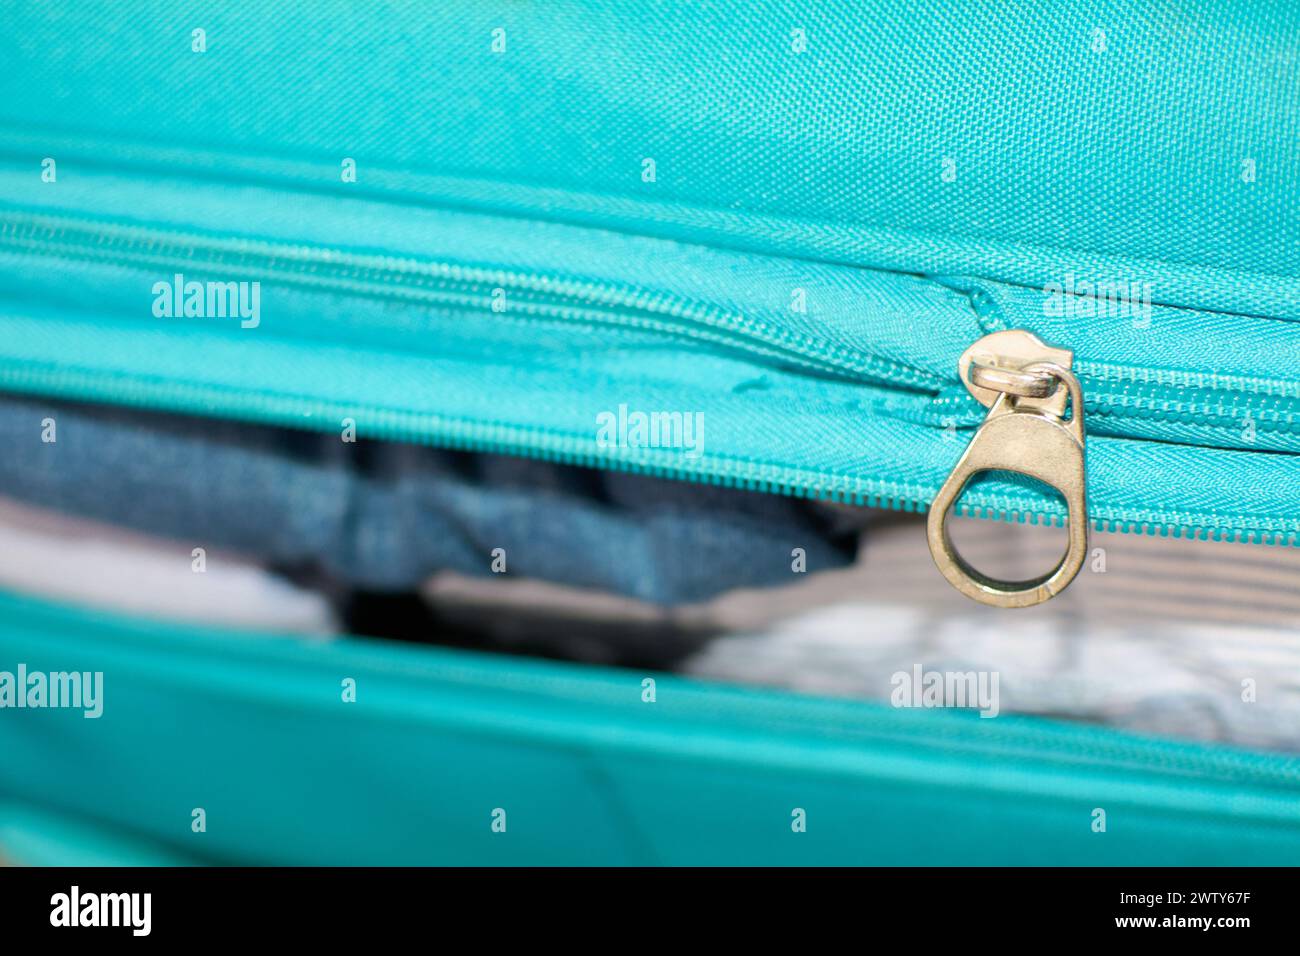 Valise bleue pleine de vêtements pour le voyage Banque D'Images